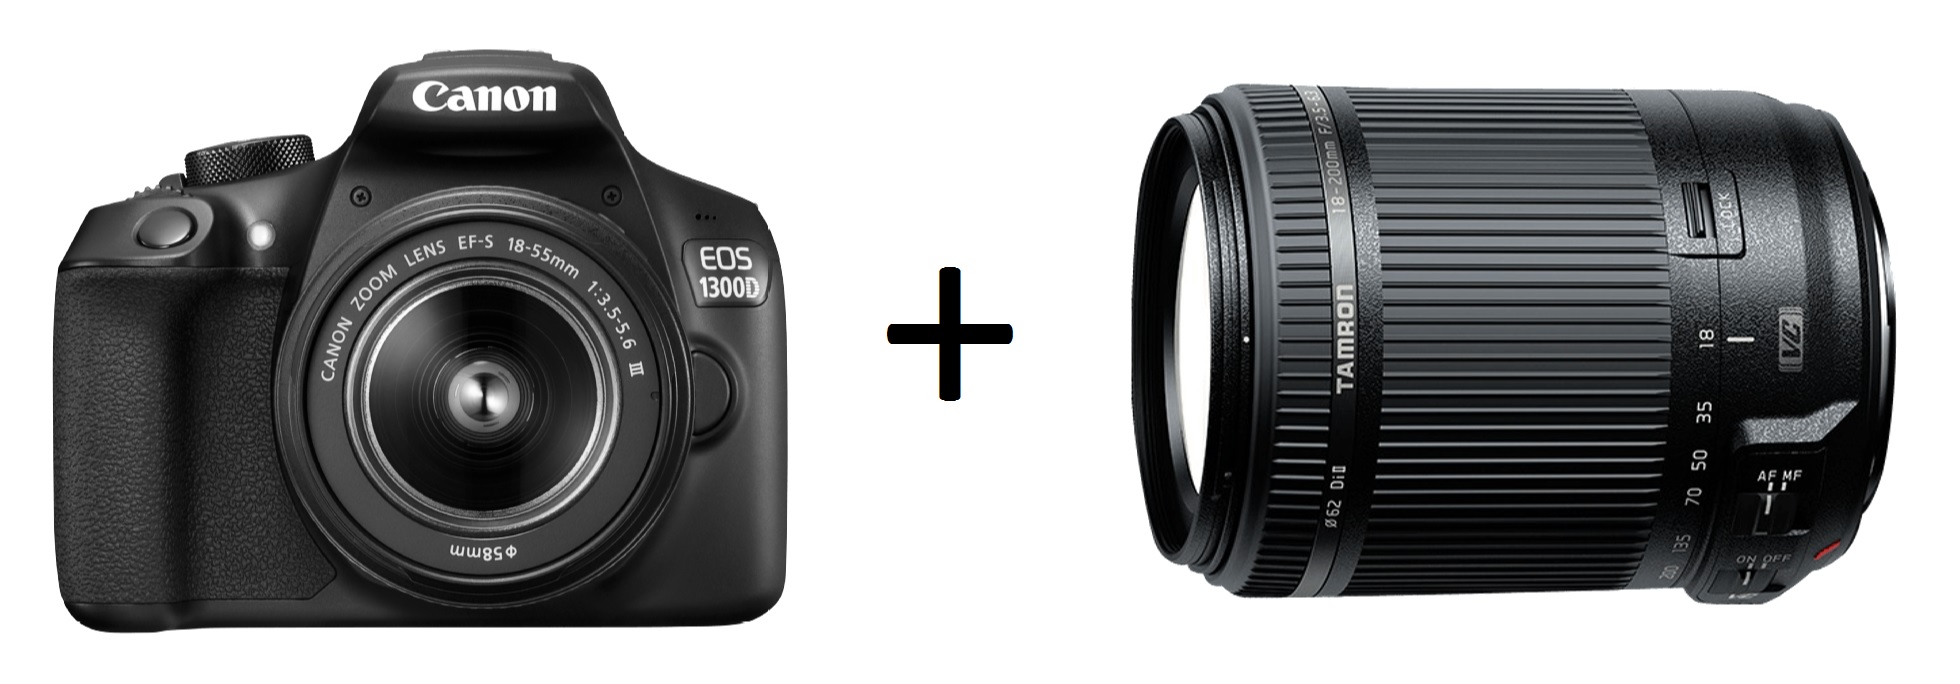 Spiegelreflexkamera Canon EOS 1300D + 18-55mm und 18-200mm Objektiv nur 444,- Euro (statt 527,- Euro) + 25,- Euro Cashback